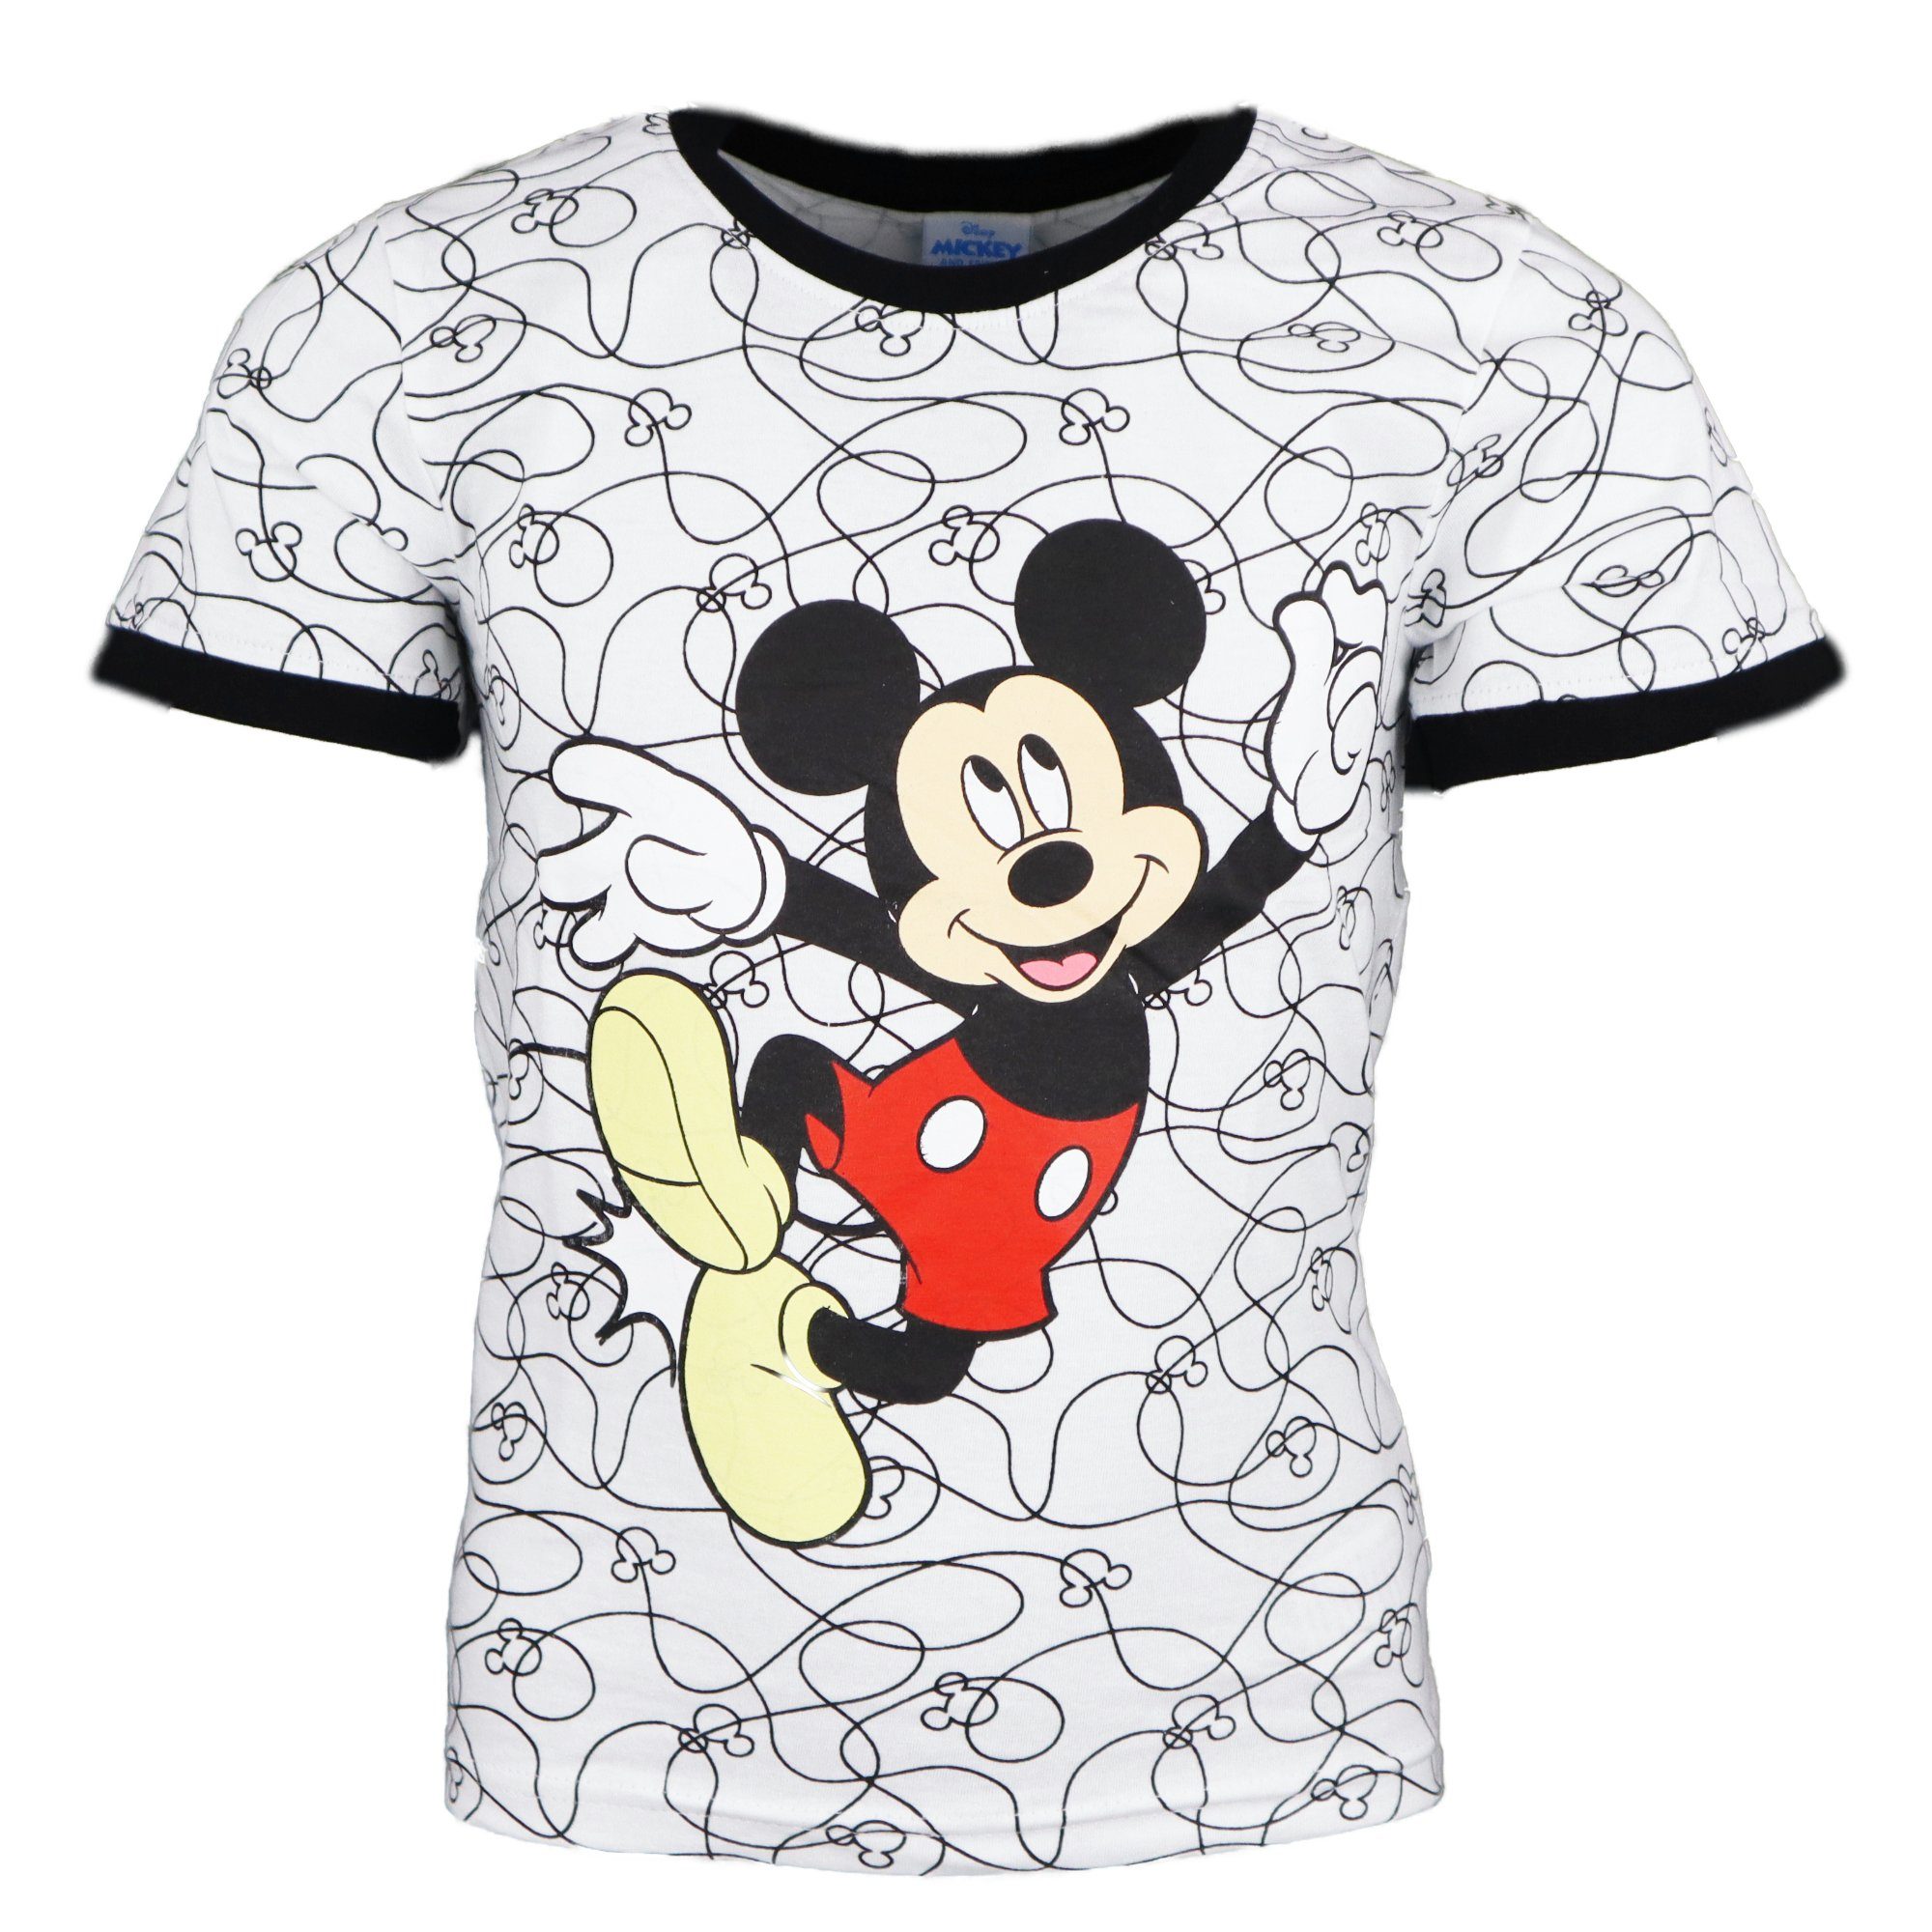 Disney Mickey Mouse Print-Shirt Mickey Maus Kinder Jungen kurzarm T-Shirt Gr. 98 bis 128, 100% Baumwolle | T-Shirts